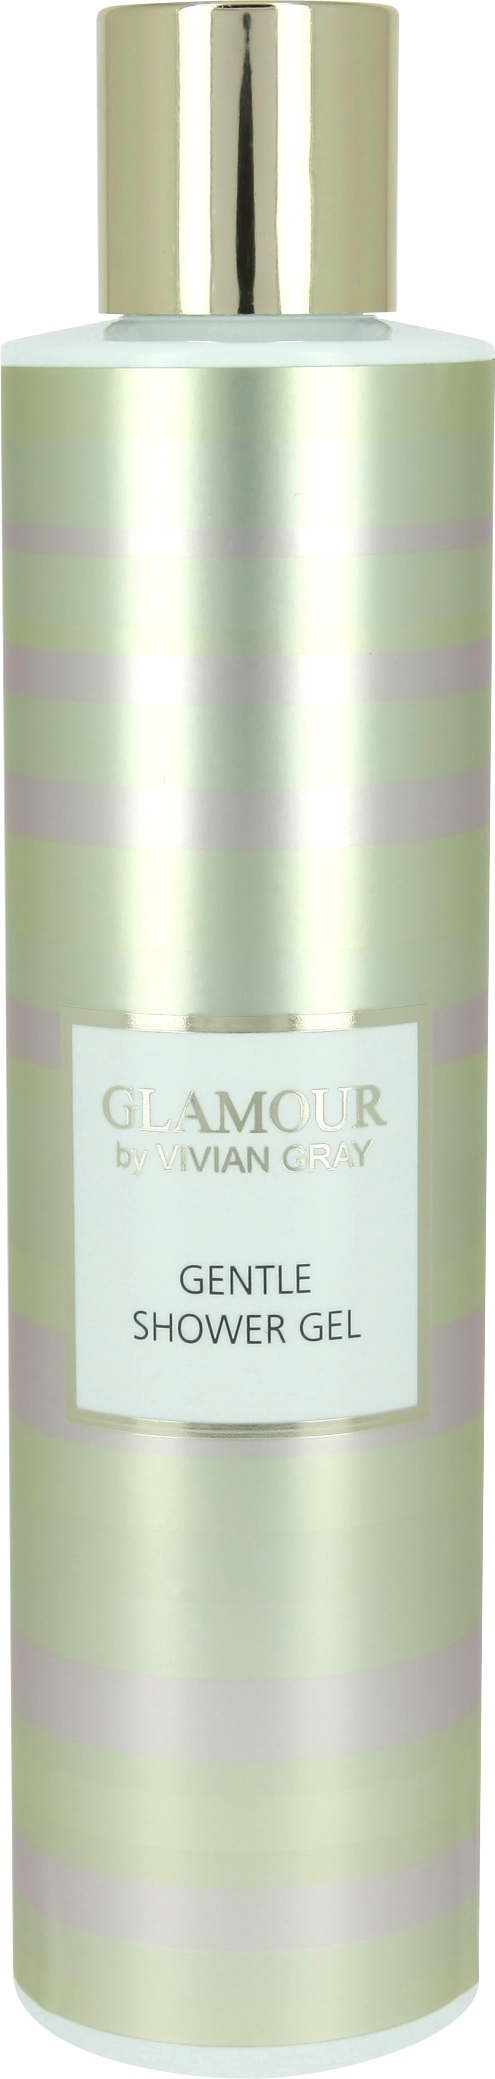 Vivian Gray Golden Glamour Shower Gel 250ml